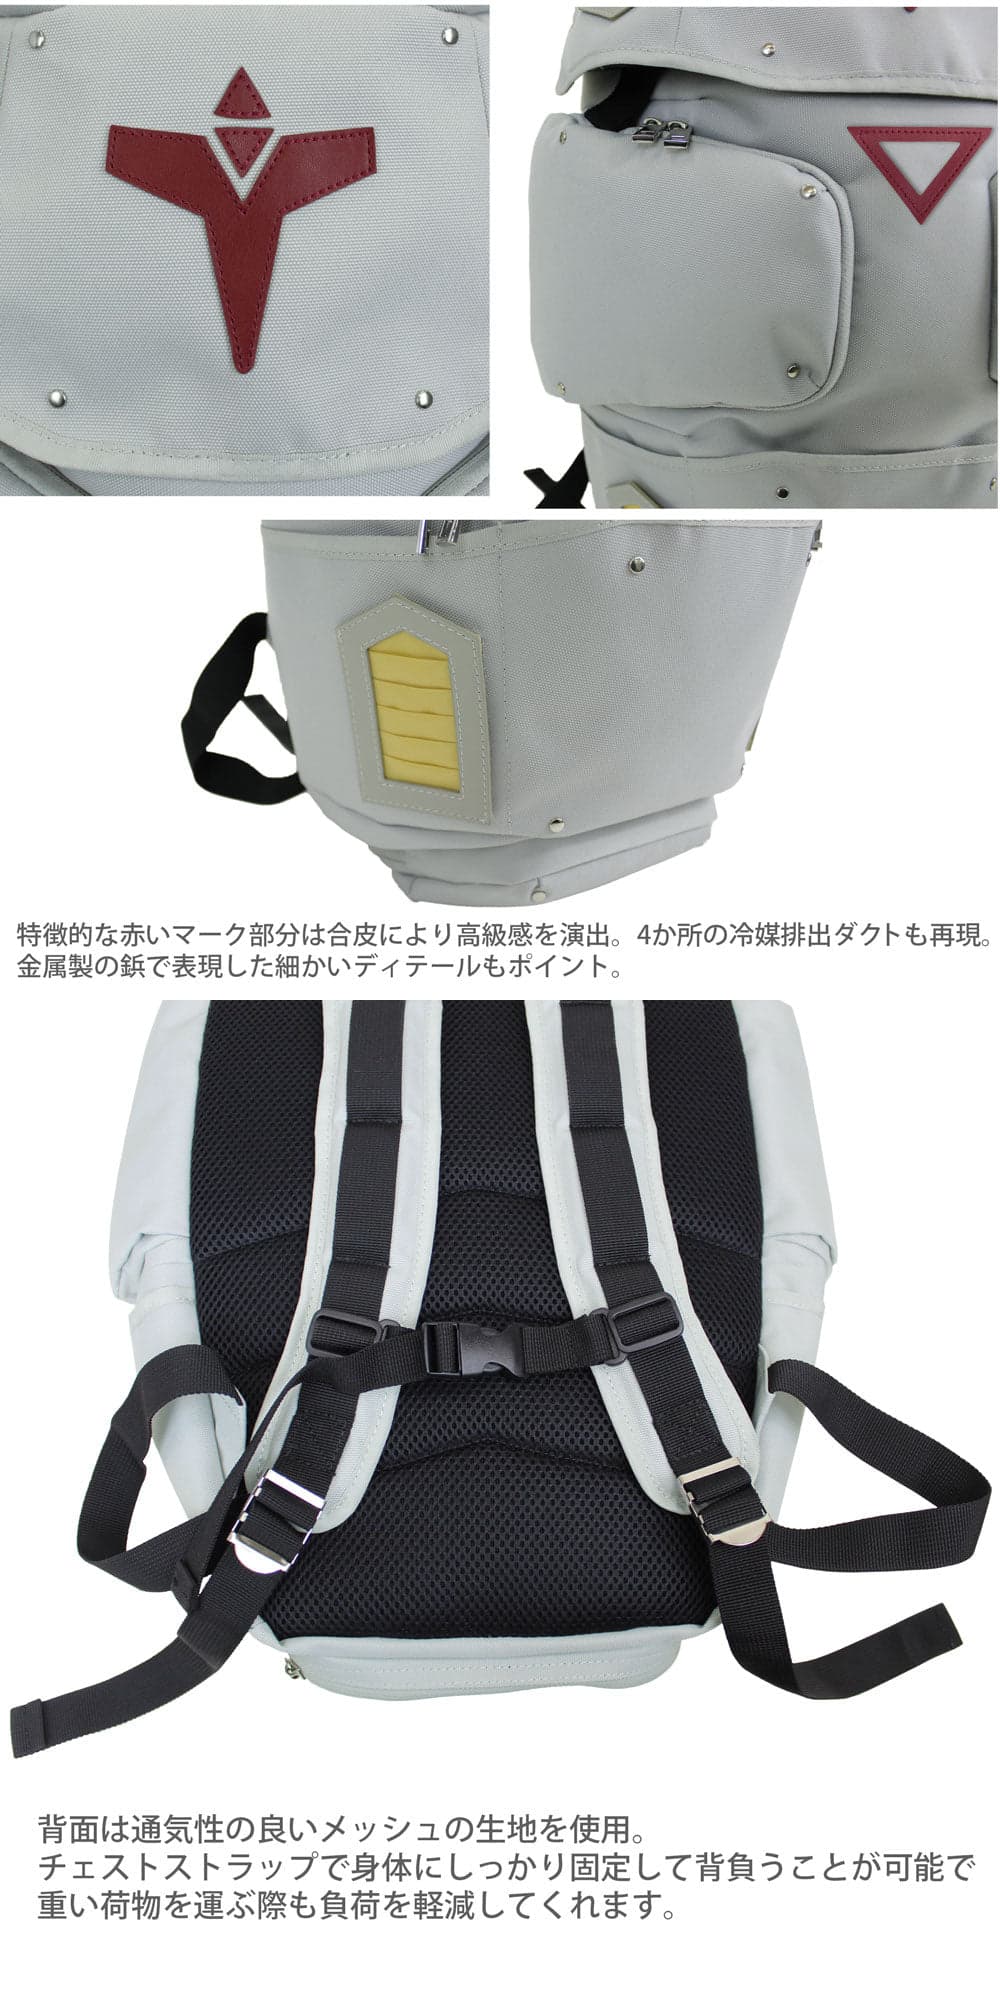 機動戦士ガンダム0083 ラジエータ・シールド型バックパック 9月発売!